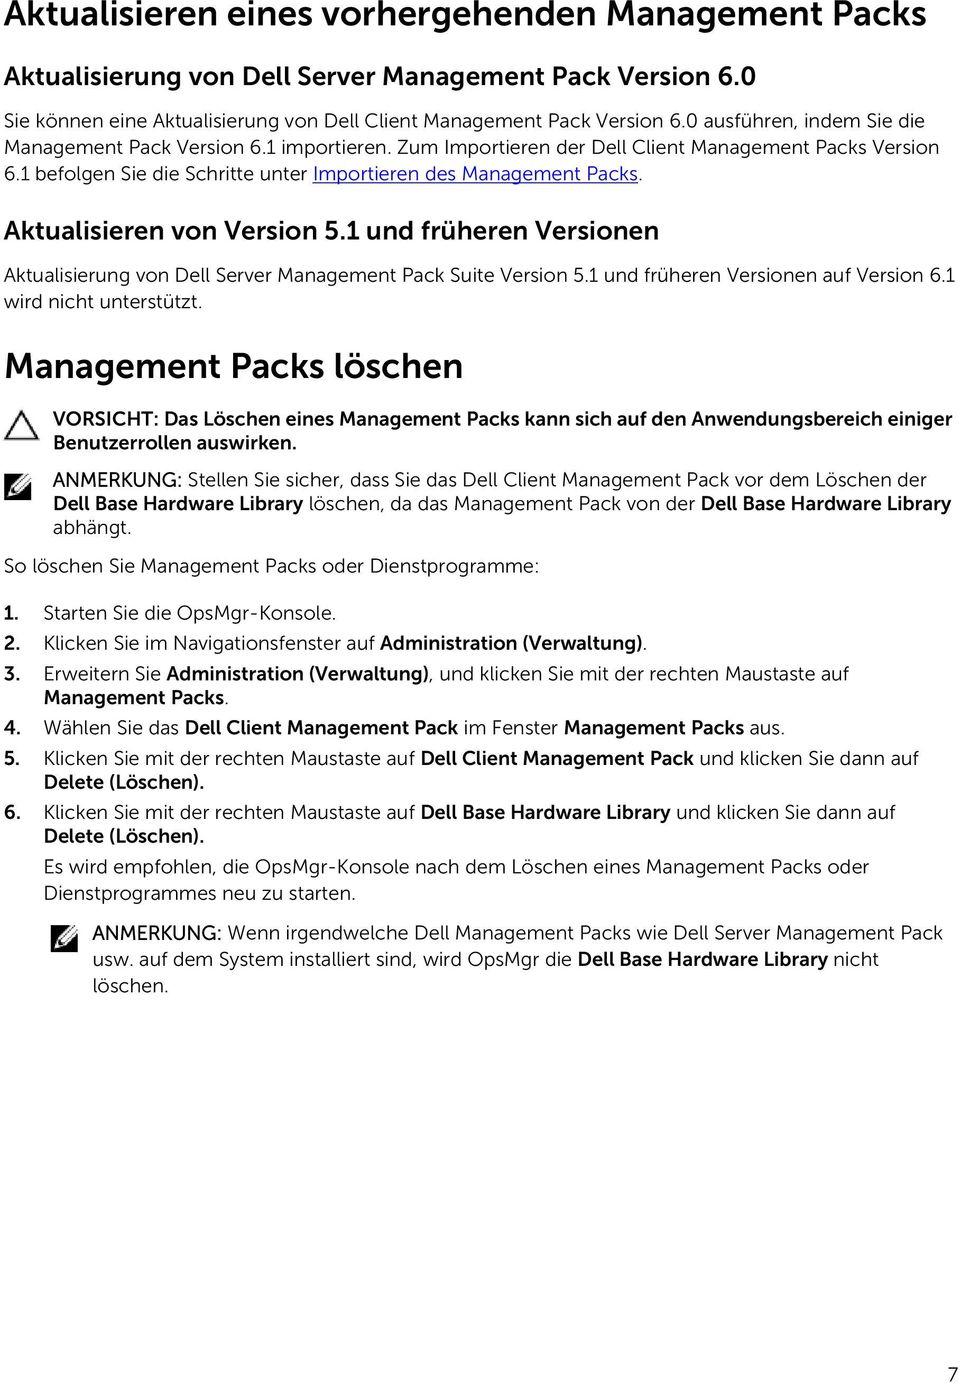 Aktualisieren von Version 5.1 und früheren Versionen Aktualisierung von Dell Server Management Pack Suite Version 5.1 und früheren Versionen auf Version 6.1 wird nicht unterstützt.